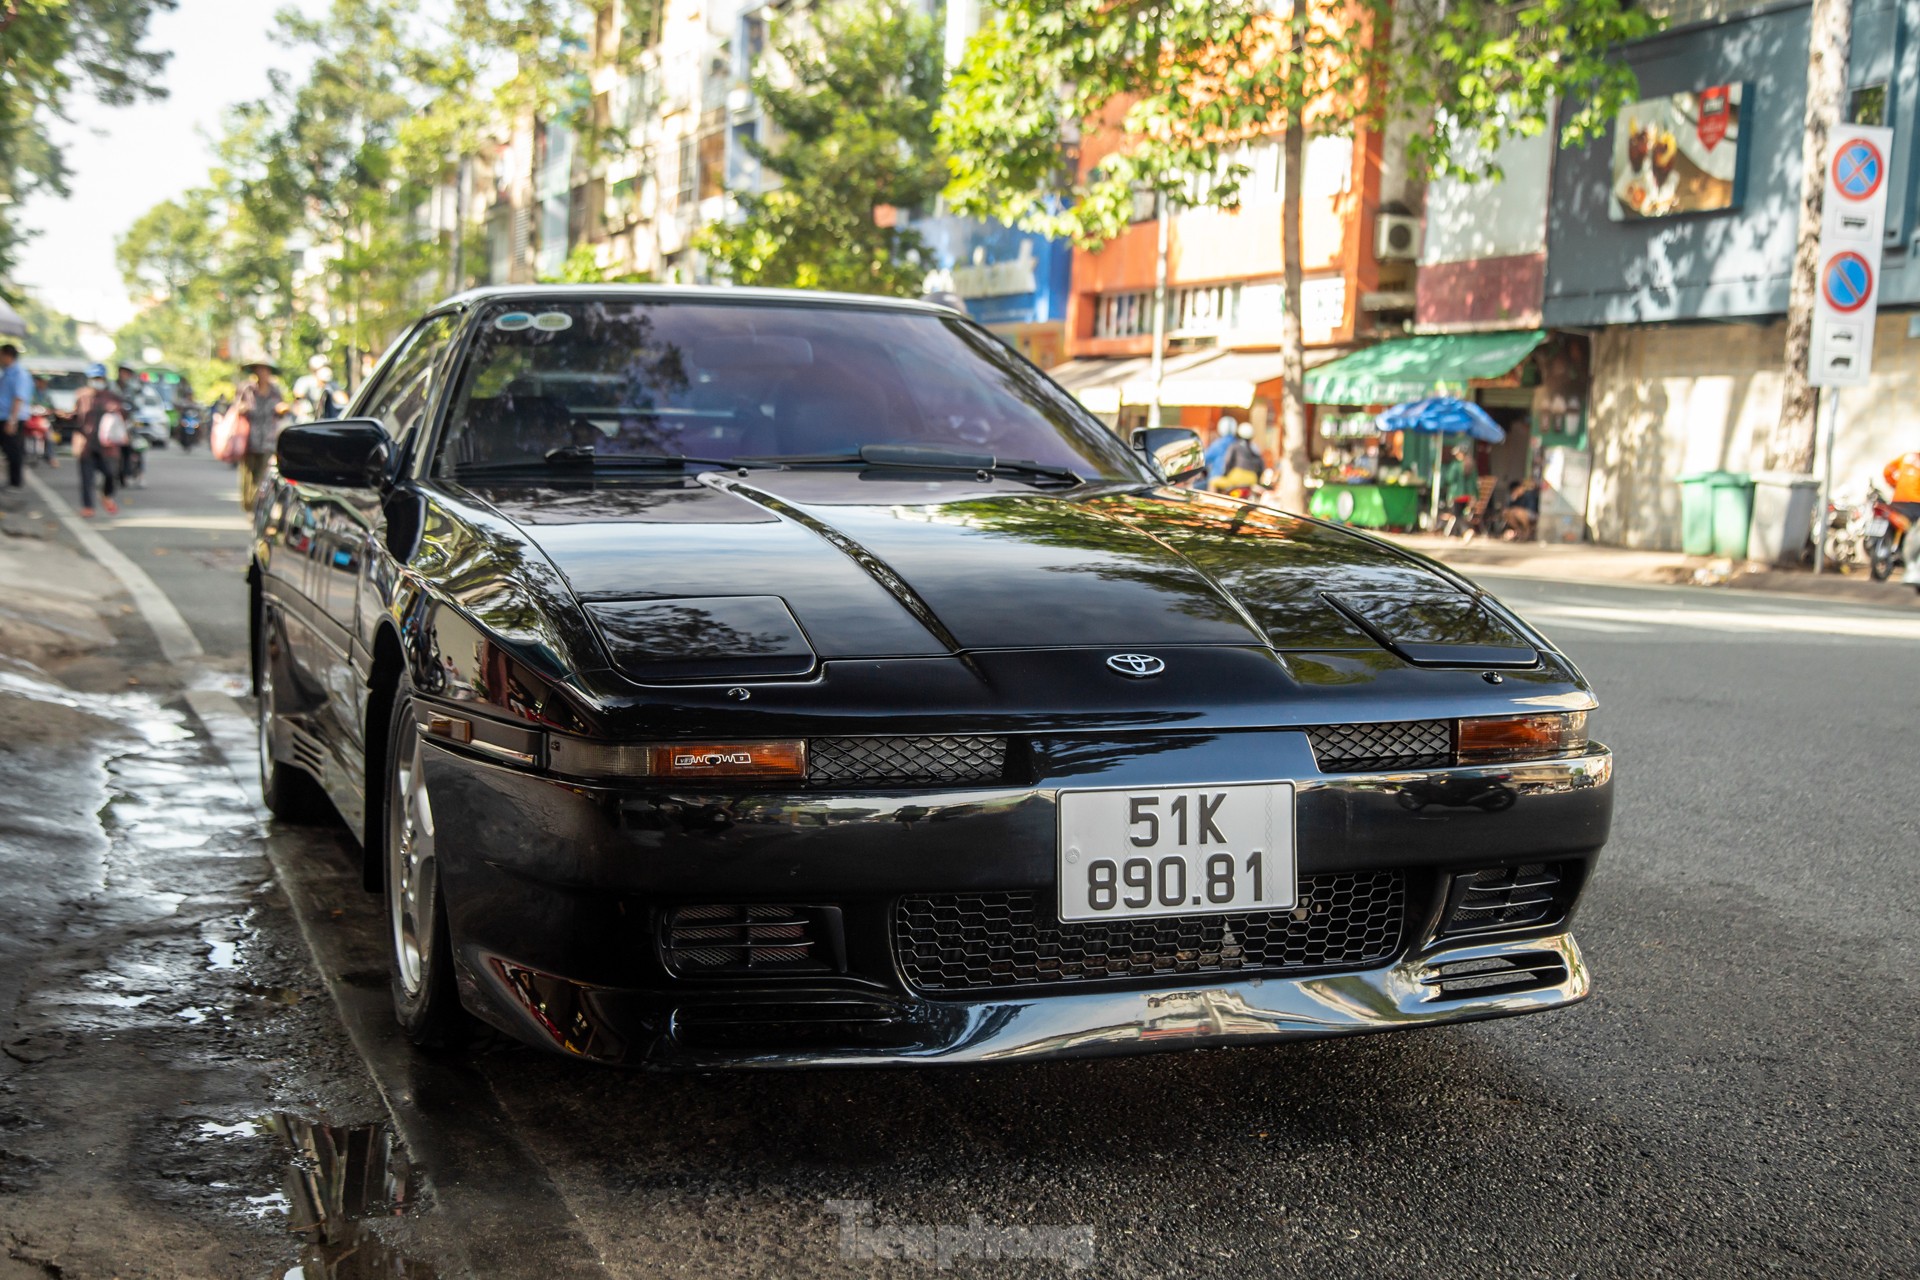 Mẫu xe hiếm Toyota Supra Mk III xuất hiện ở Sài Gòn